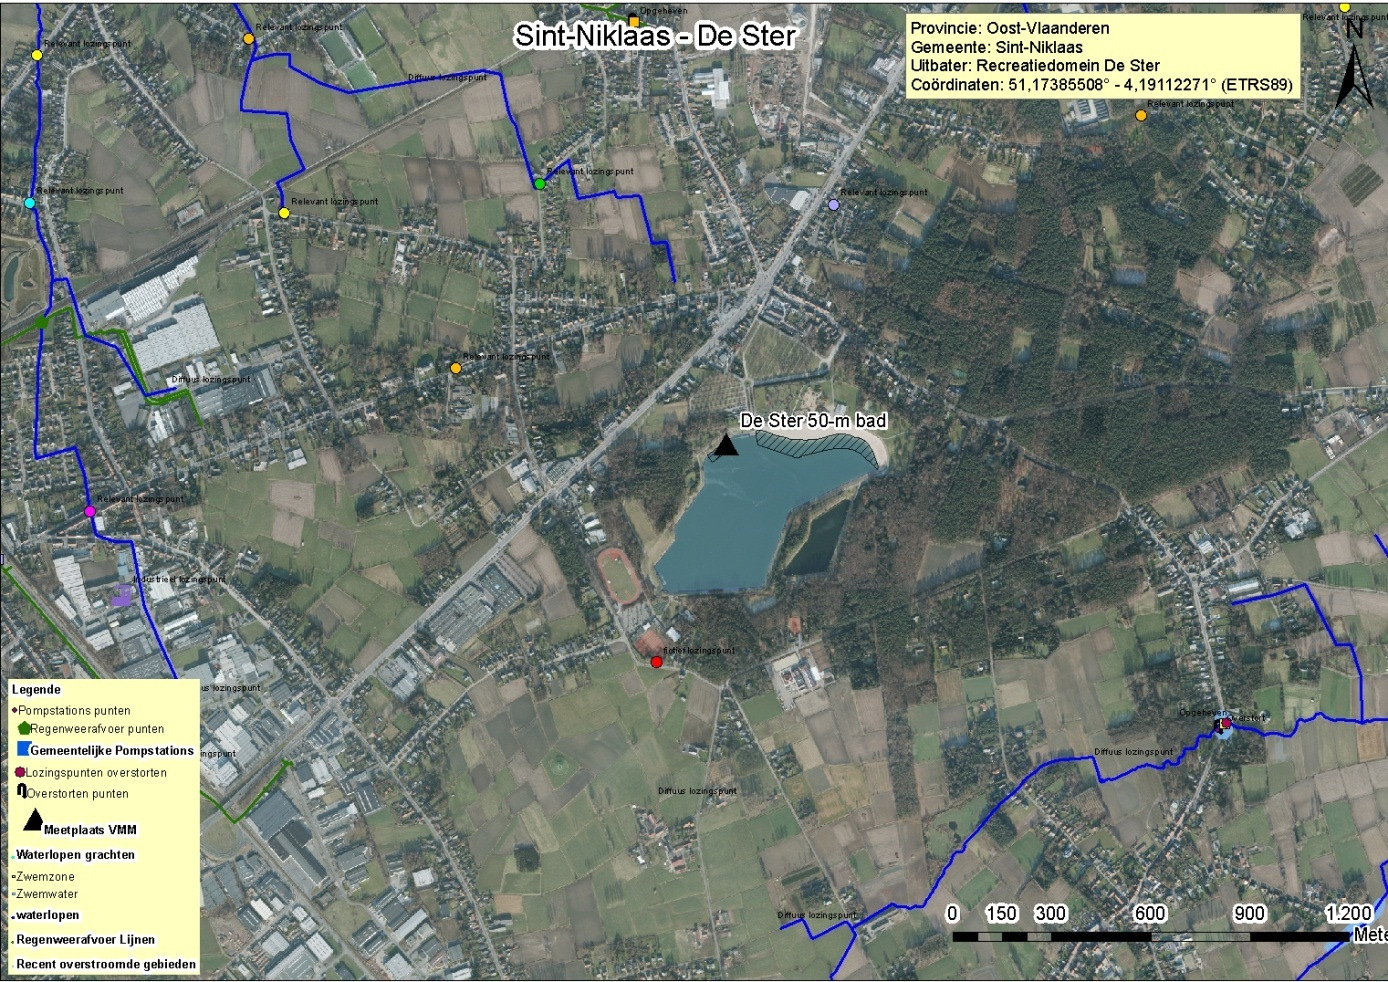 Bijlage 7: Rioleringskaart omgeving. De zwemzone van De Ster is gelegen links van de tekst. Alle gekleurde lijnen stellen rioleringen voor.